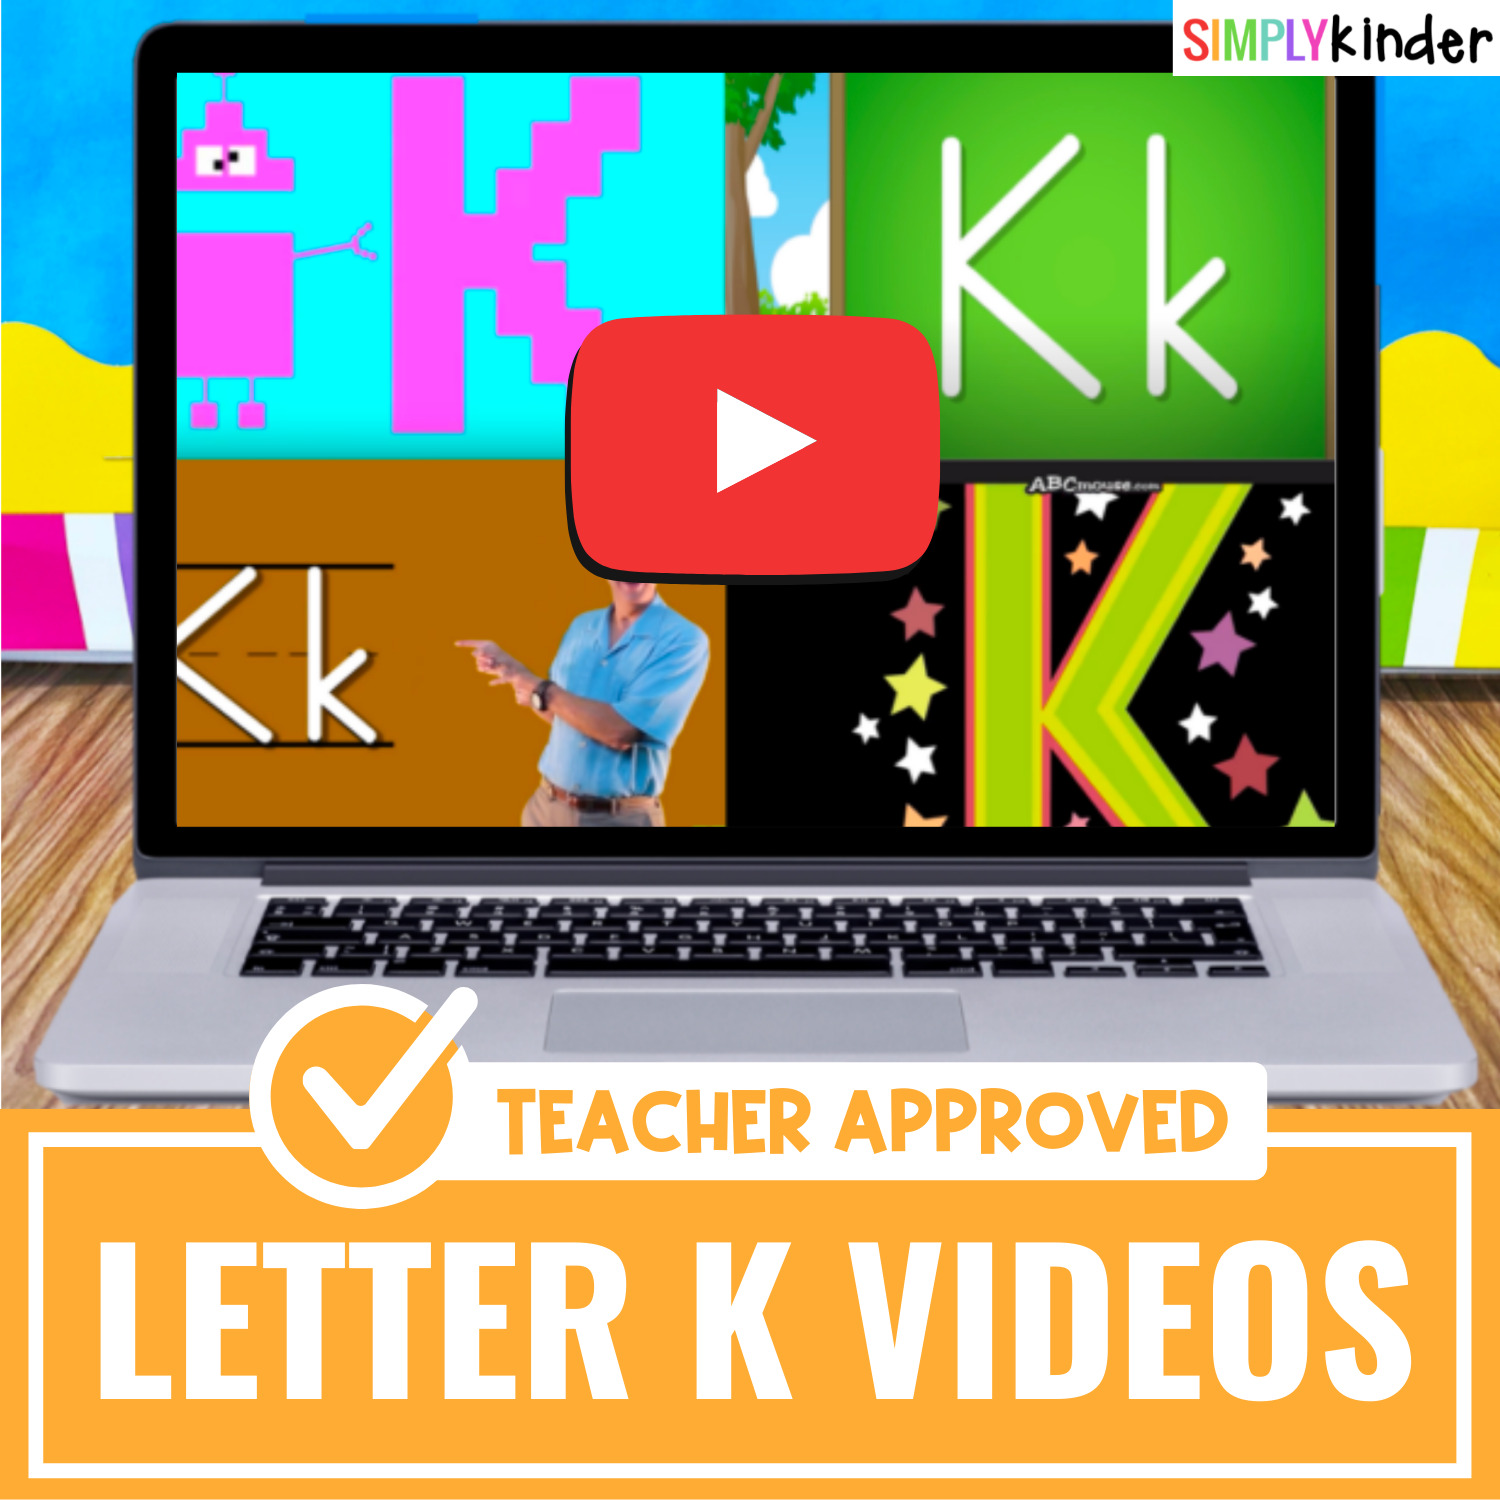 Teacher-Approved Videos Letter K